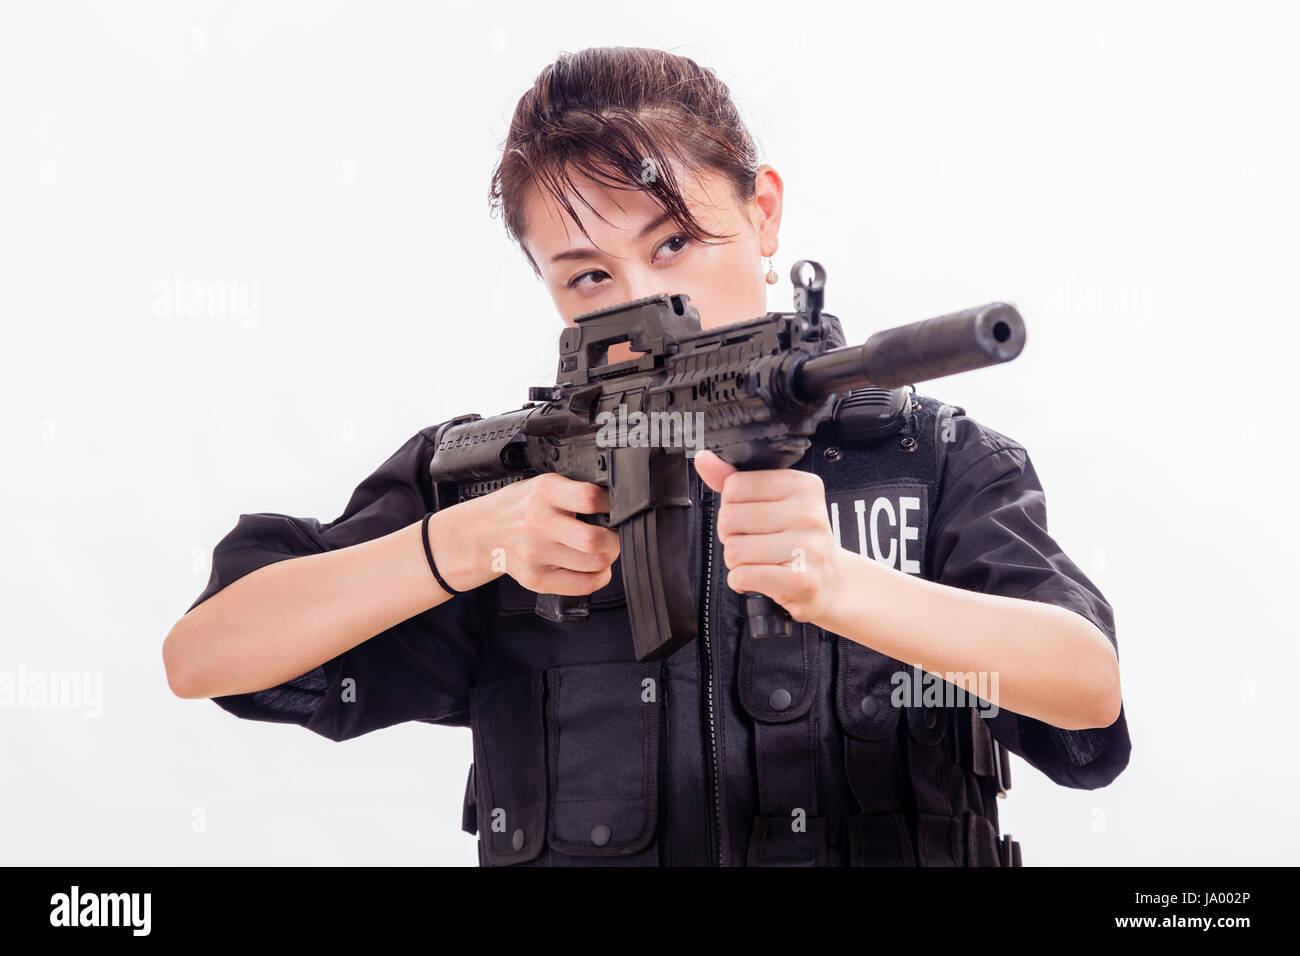 Chinesische Polizistin mit Selbstladegewehr Stockfotografie - Alamy